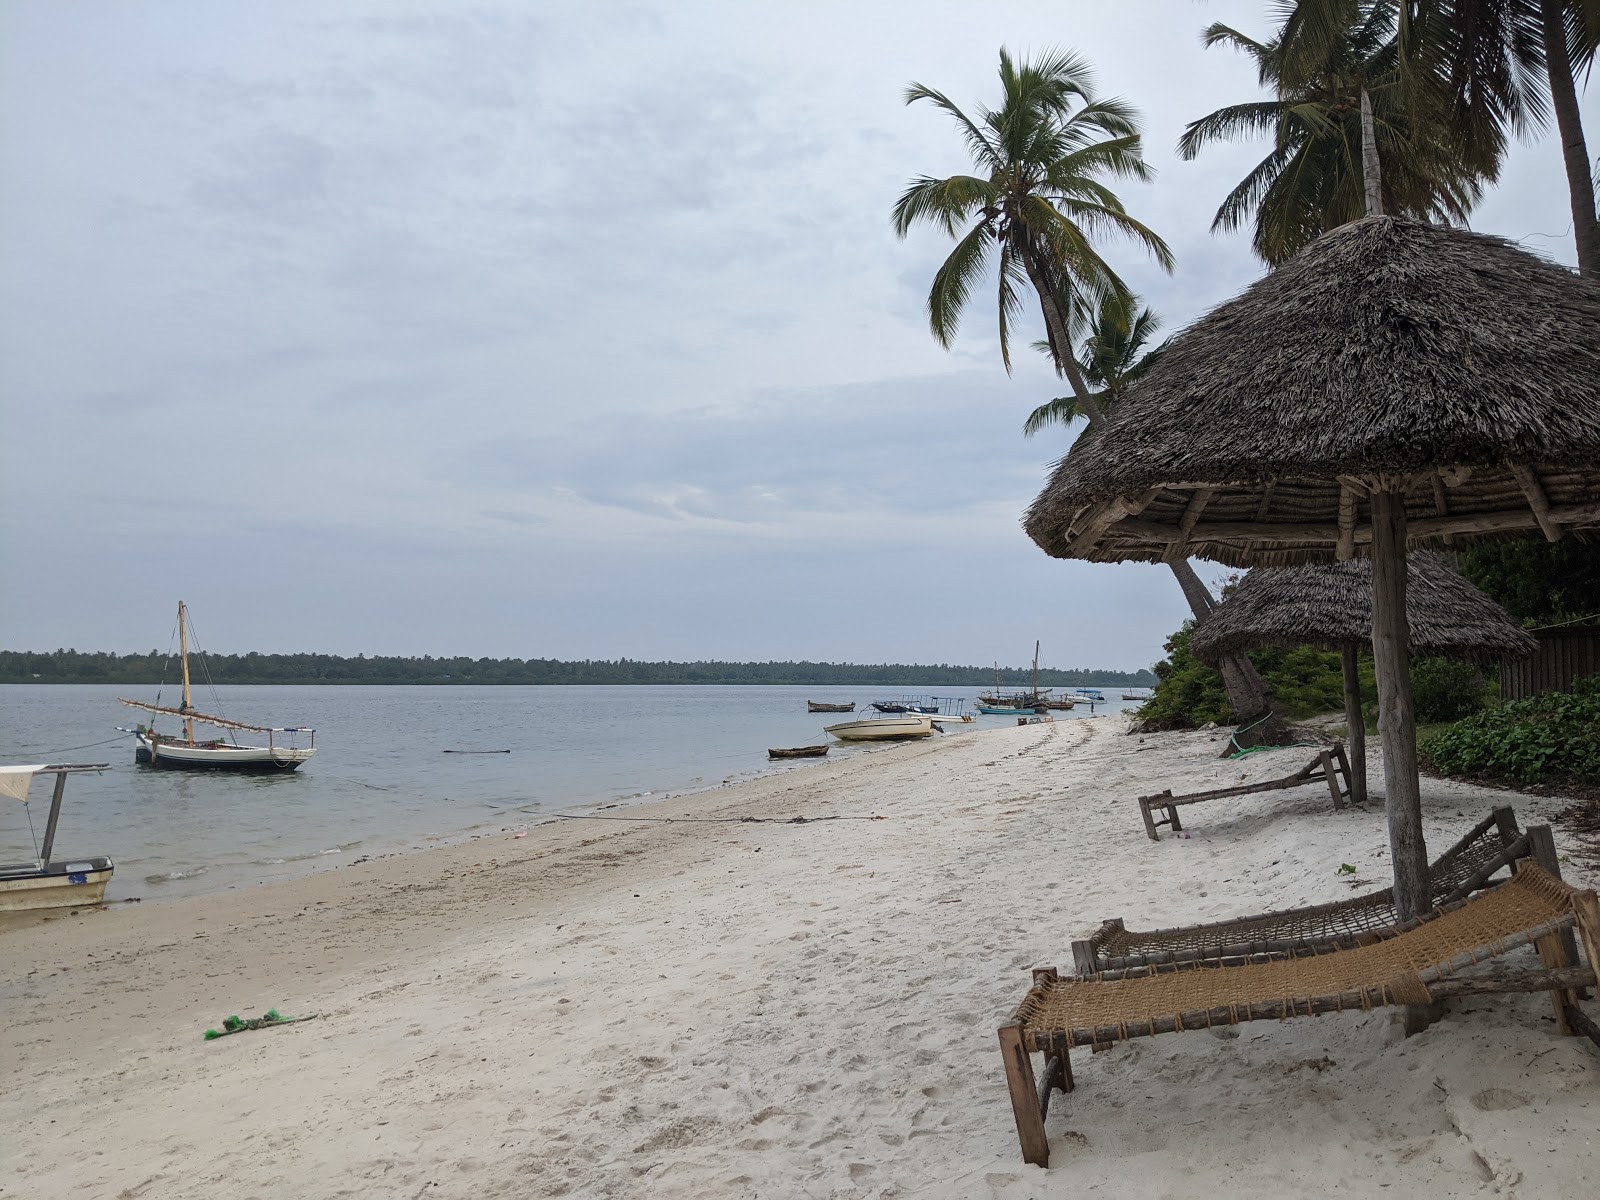 Zdjęcie Plaża na wyspie Mafii - popularne miejsce wśród znawców relaksu